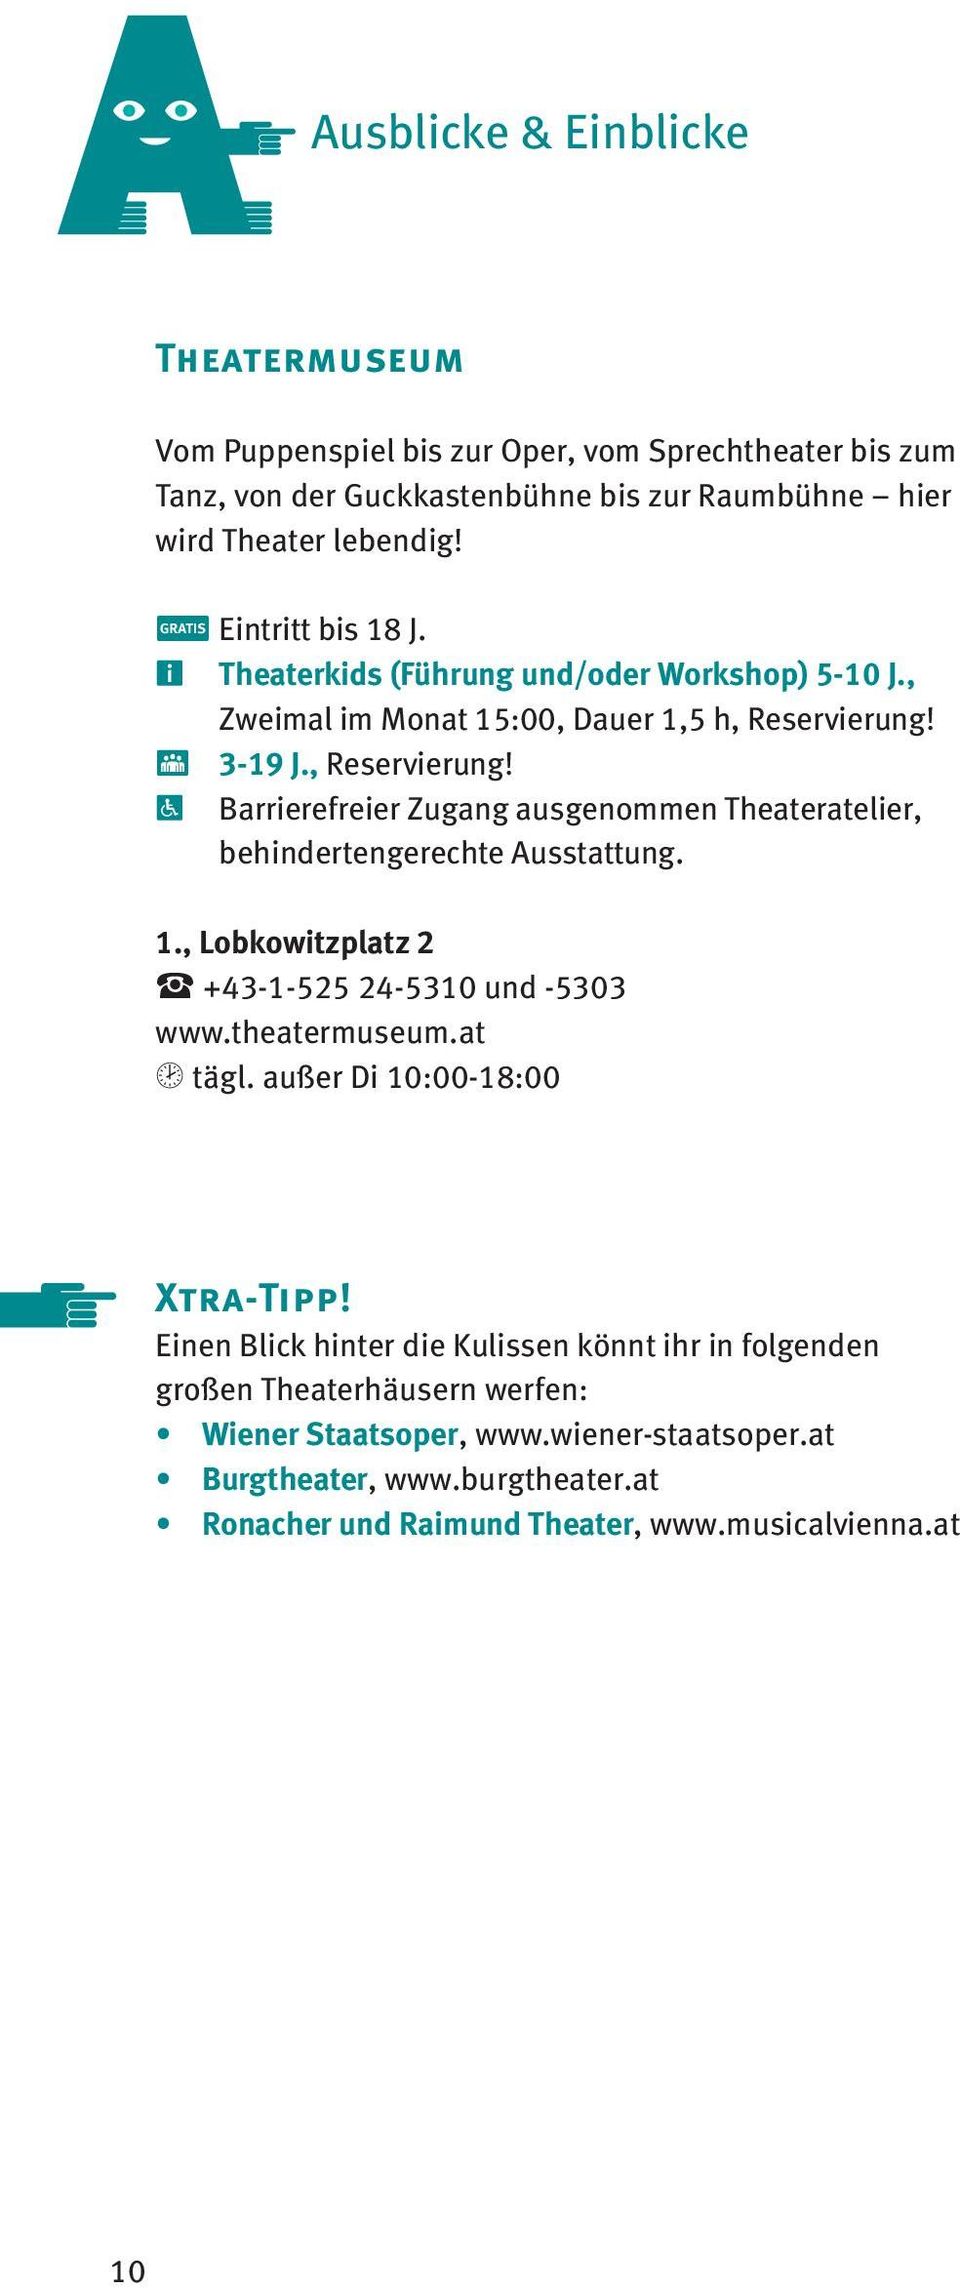 V 3-19 J., Reservierung! R Barrierefreier Zugang ausgenommen Theateratelier, behindertengerechte Ausstattung. 1., Lobkowitzplatz 2 < +43-1-525 24-5310 und -5303 www.theatermuseum.